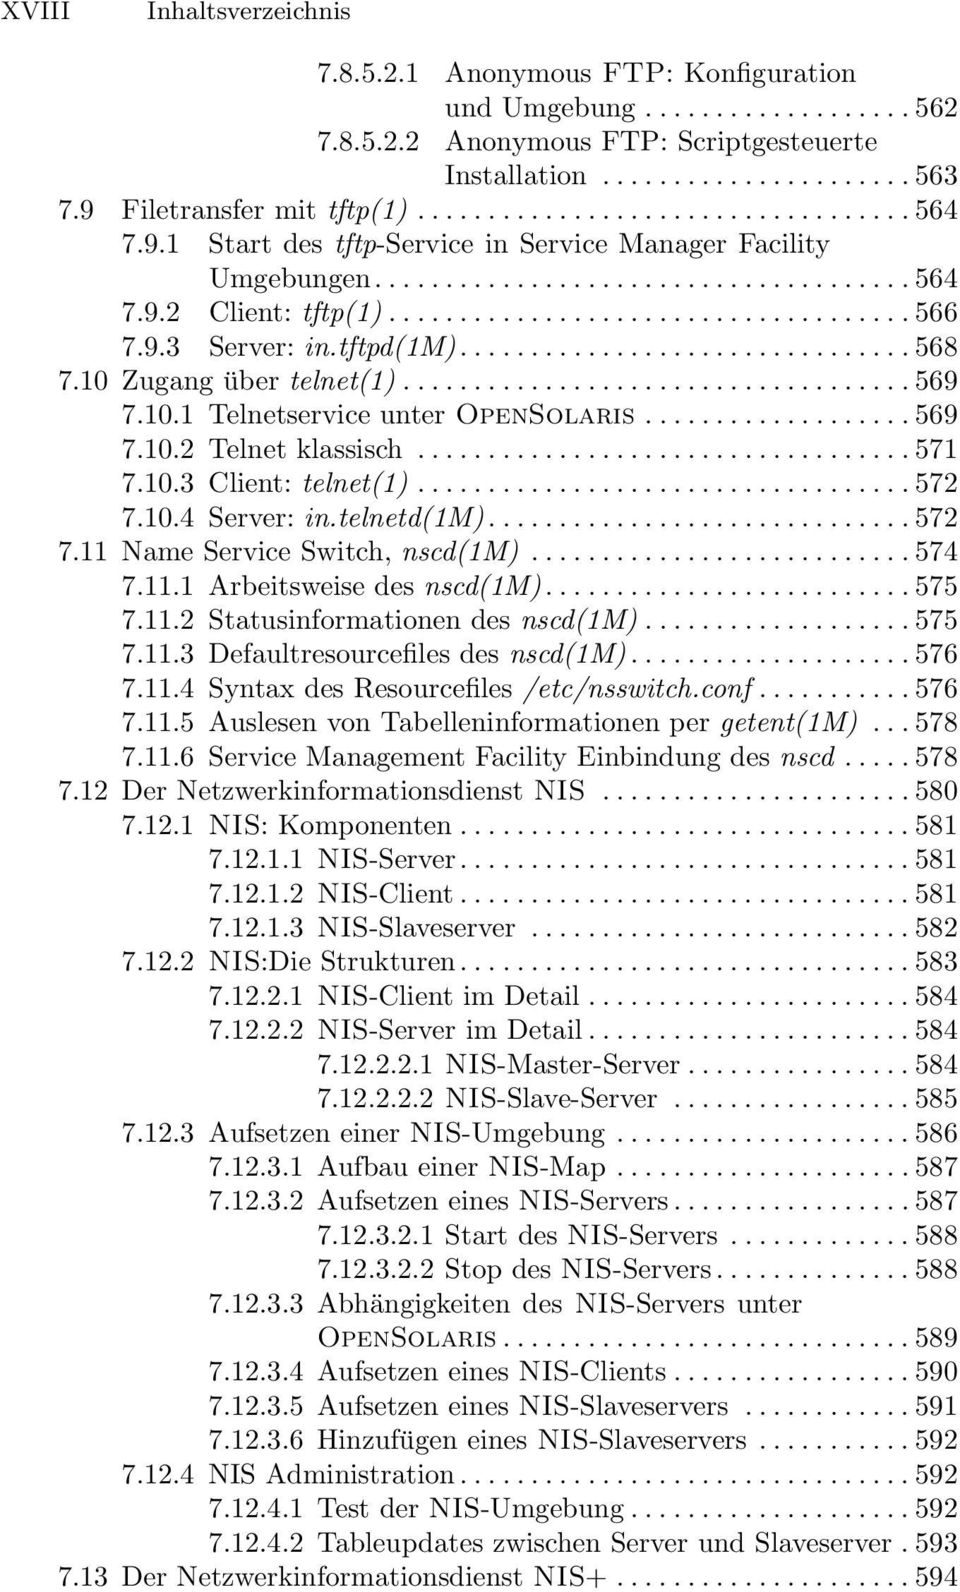 10.1 Telnetservice unter OpenSolaris...569 7.10.2 Telnet klassisch...571 7.10.3 Client: telnet(1)... 572 7.10.4 Server: in.telnetd(1m)... 572 7.11 Name Service Switch, nscd(1m)... 574 7.11.1 Arbeitsweise des nscd(1m).